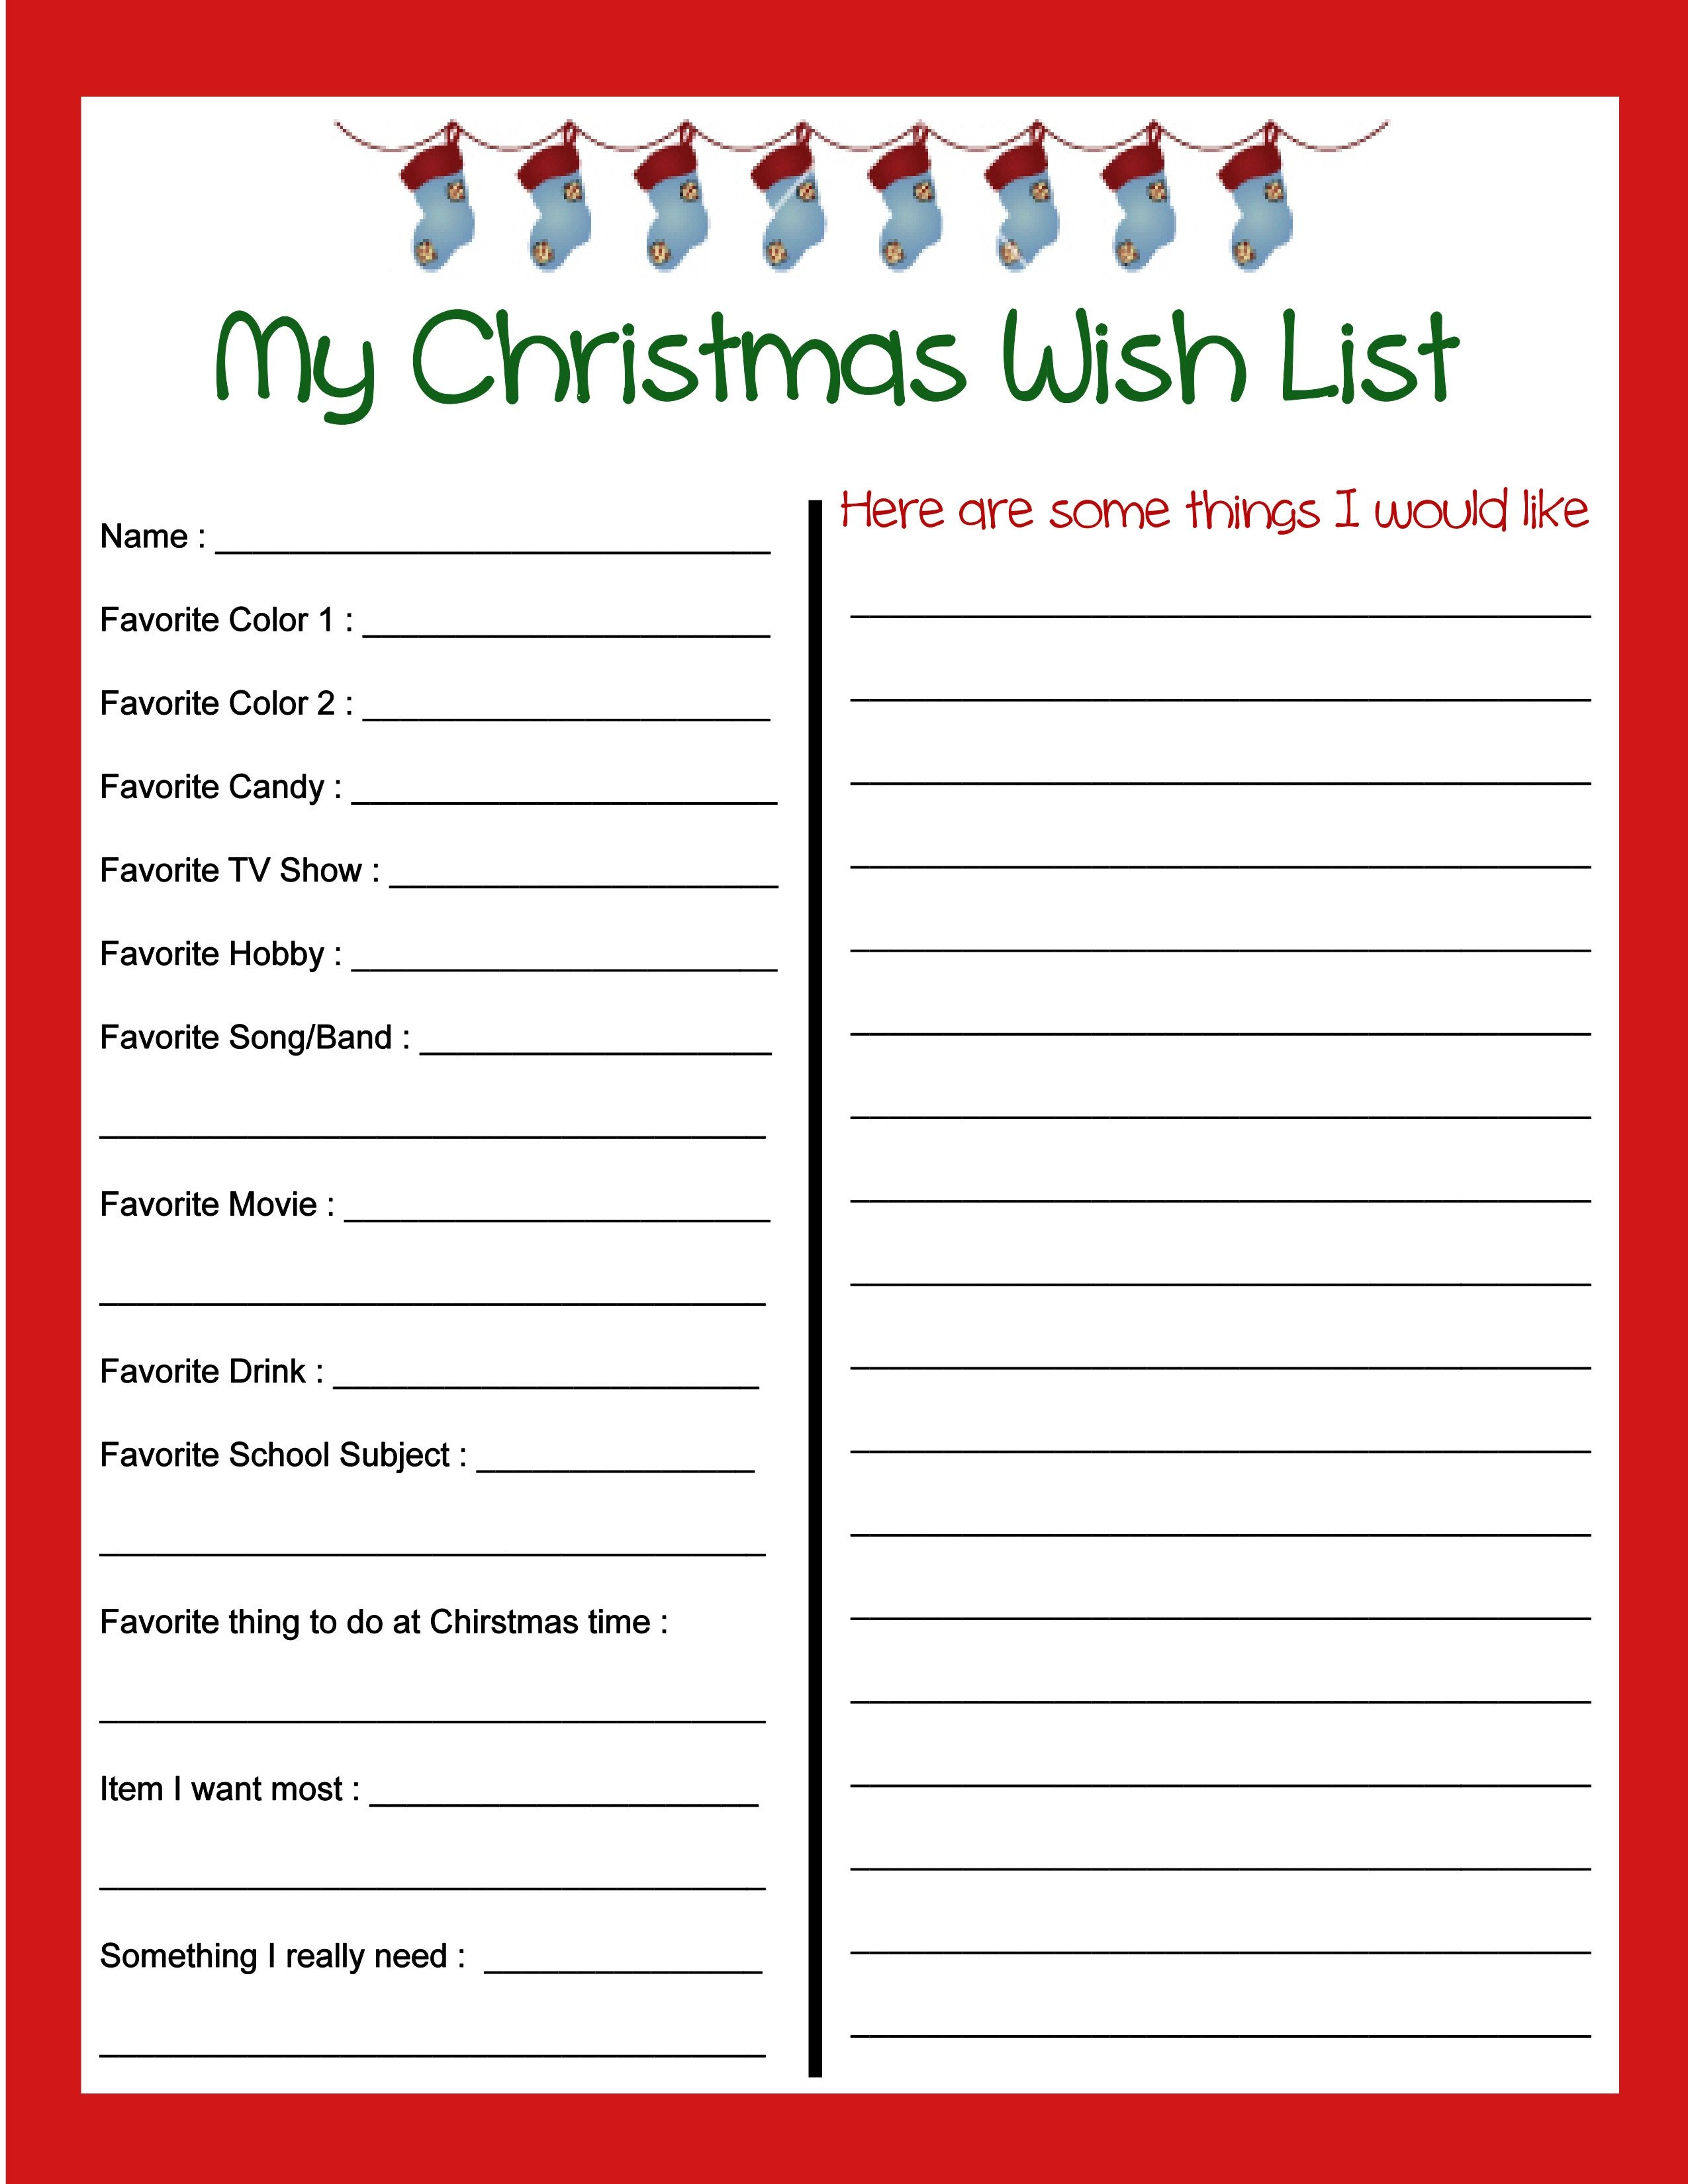 Pinbecky Stout On Christmas!!! | Christmas Wish List Template - Free Printable Christmas Wish List